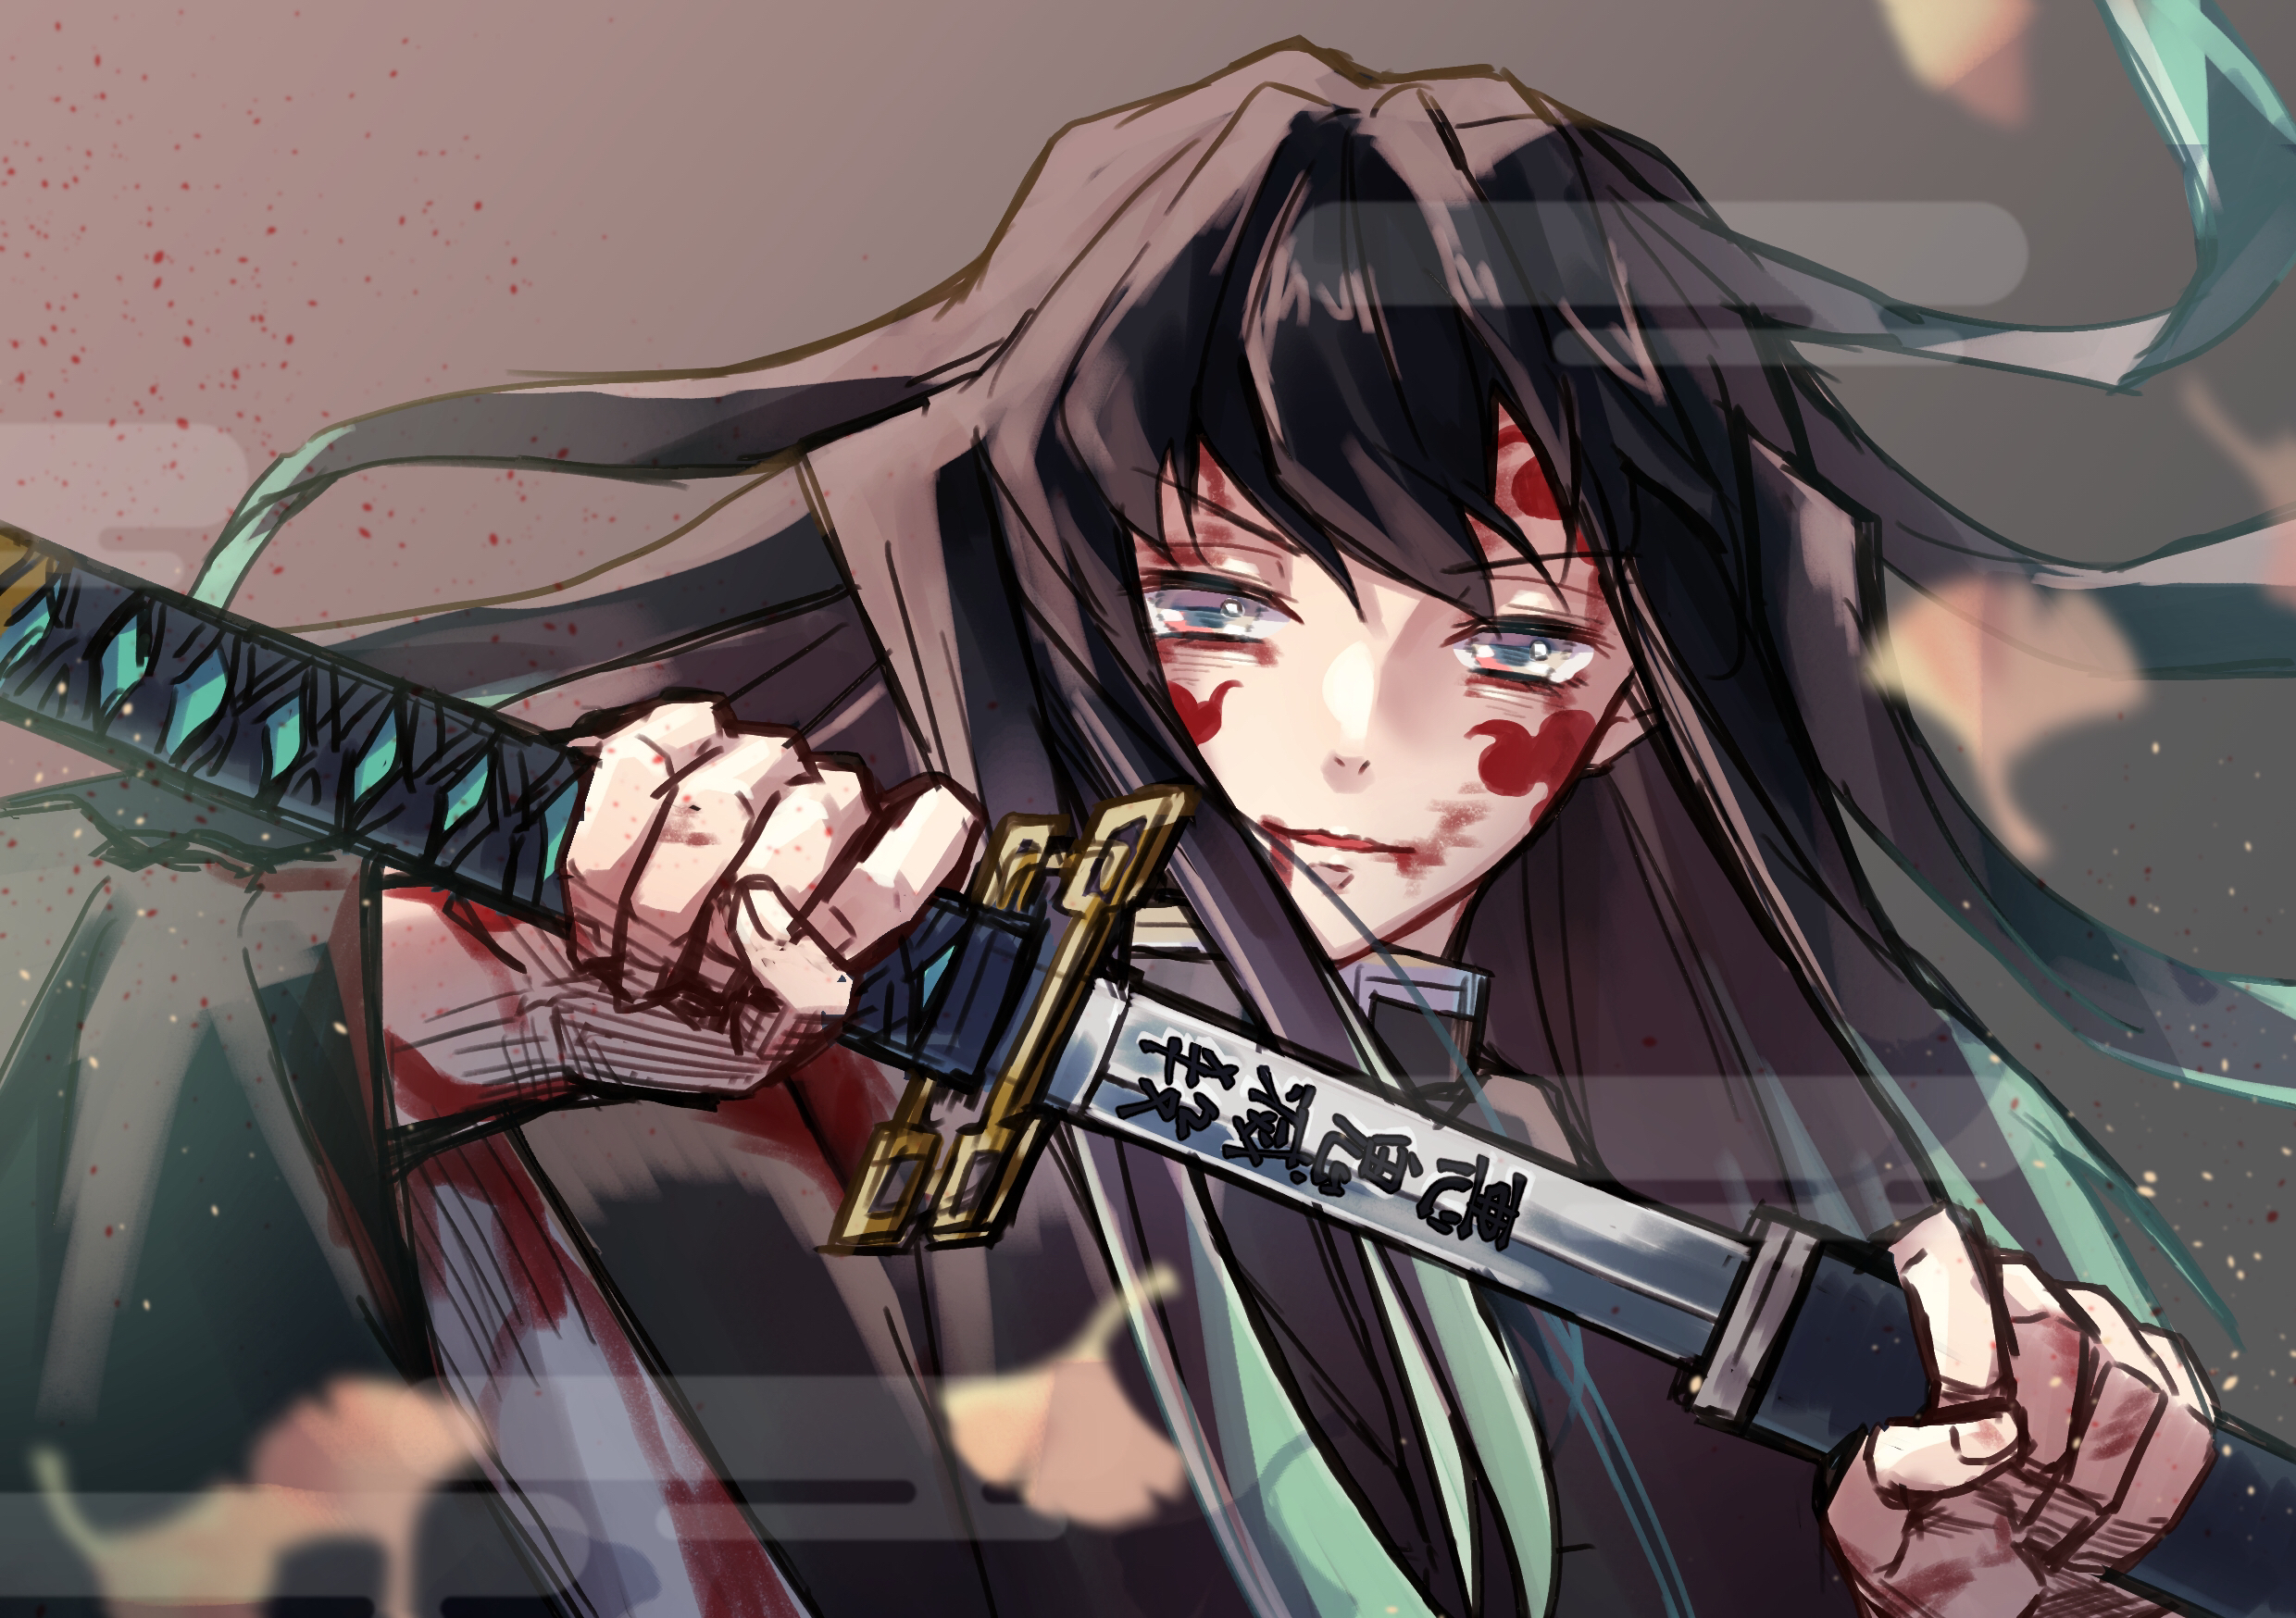 muichiro tokito, anime, demon slayer: kimetsu no yaiba, brown hair, katana, sword, woman warrior